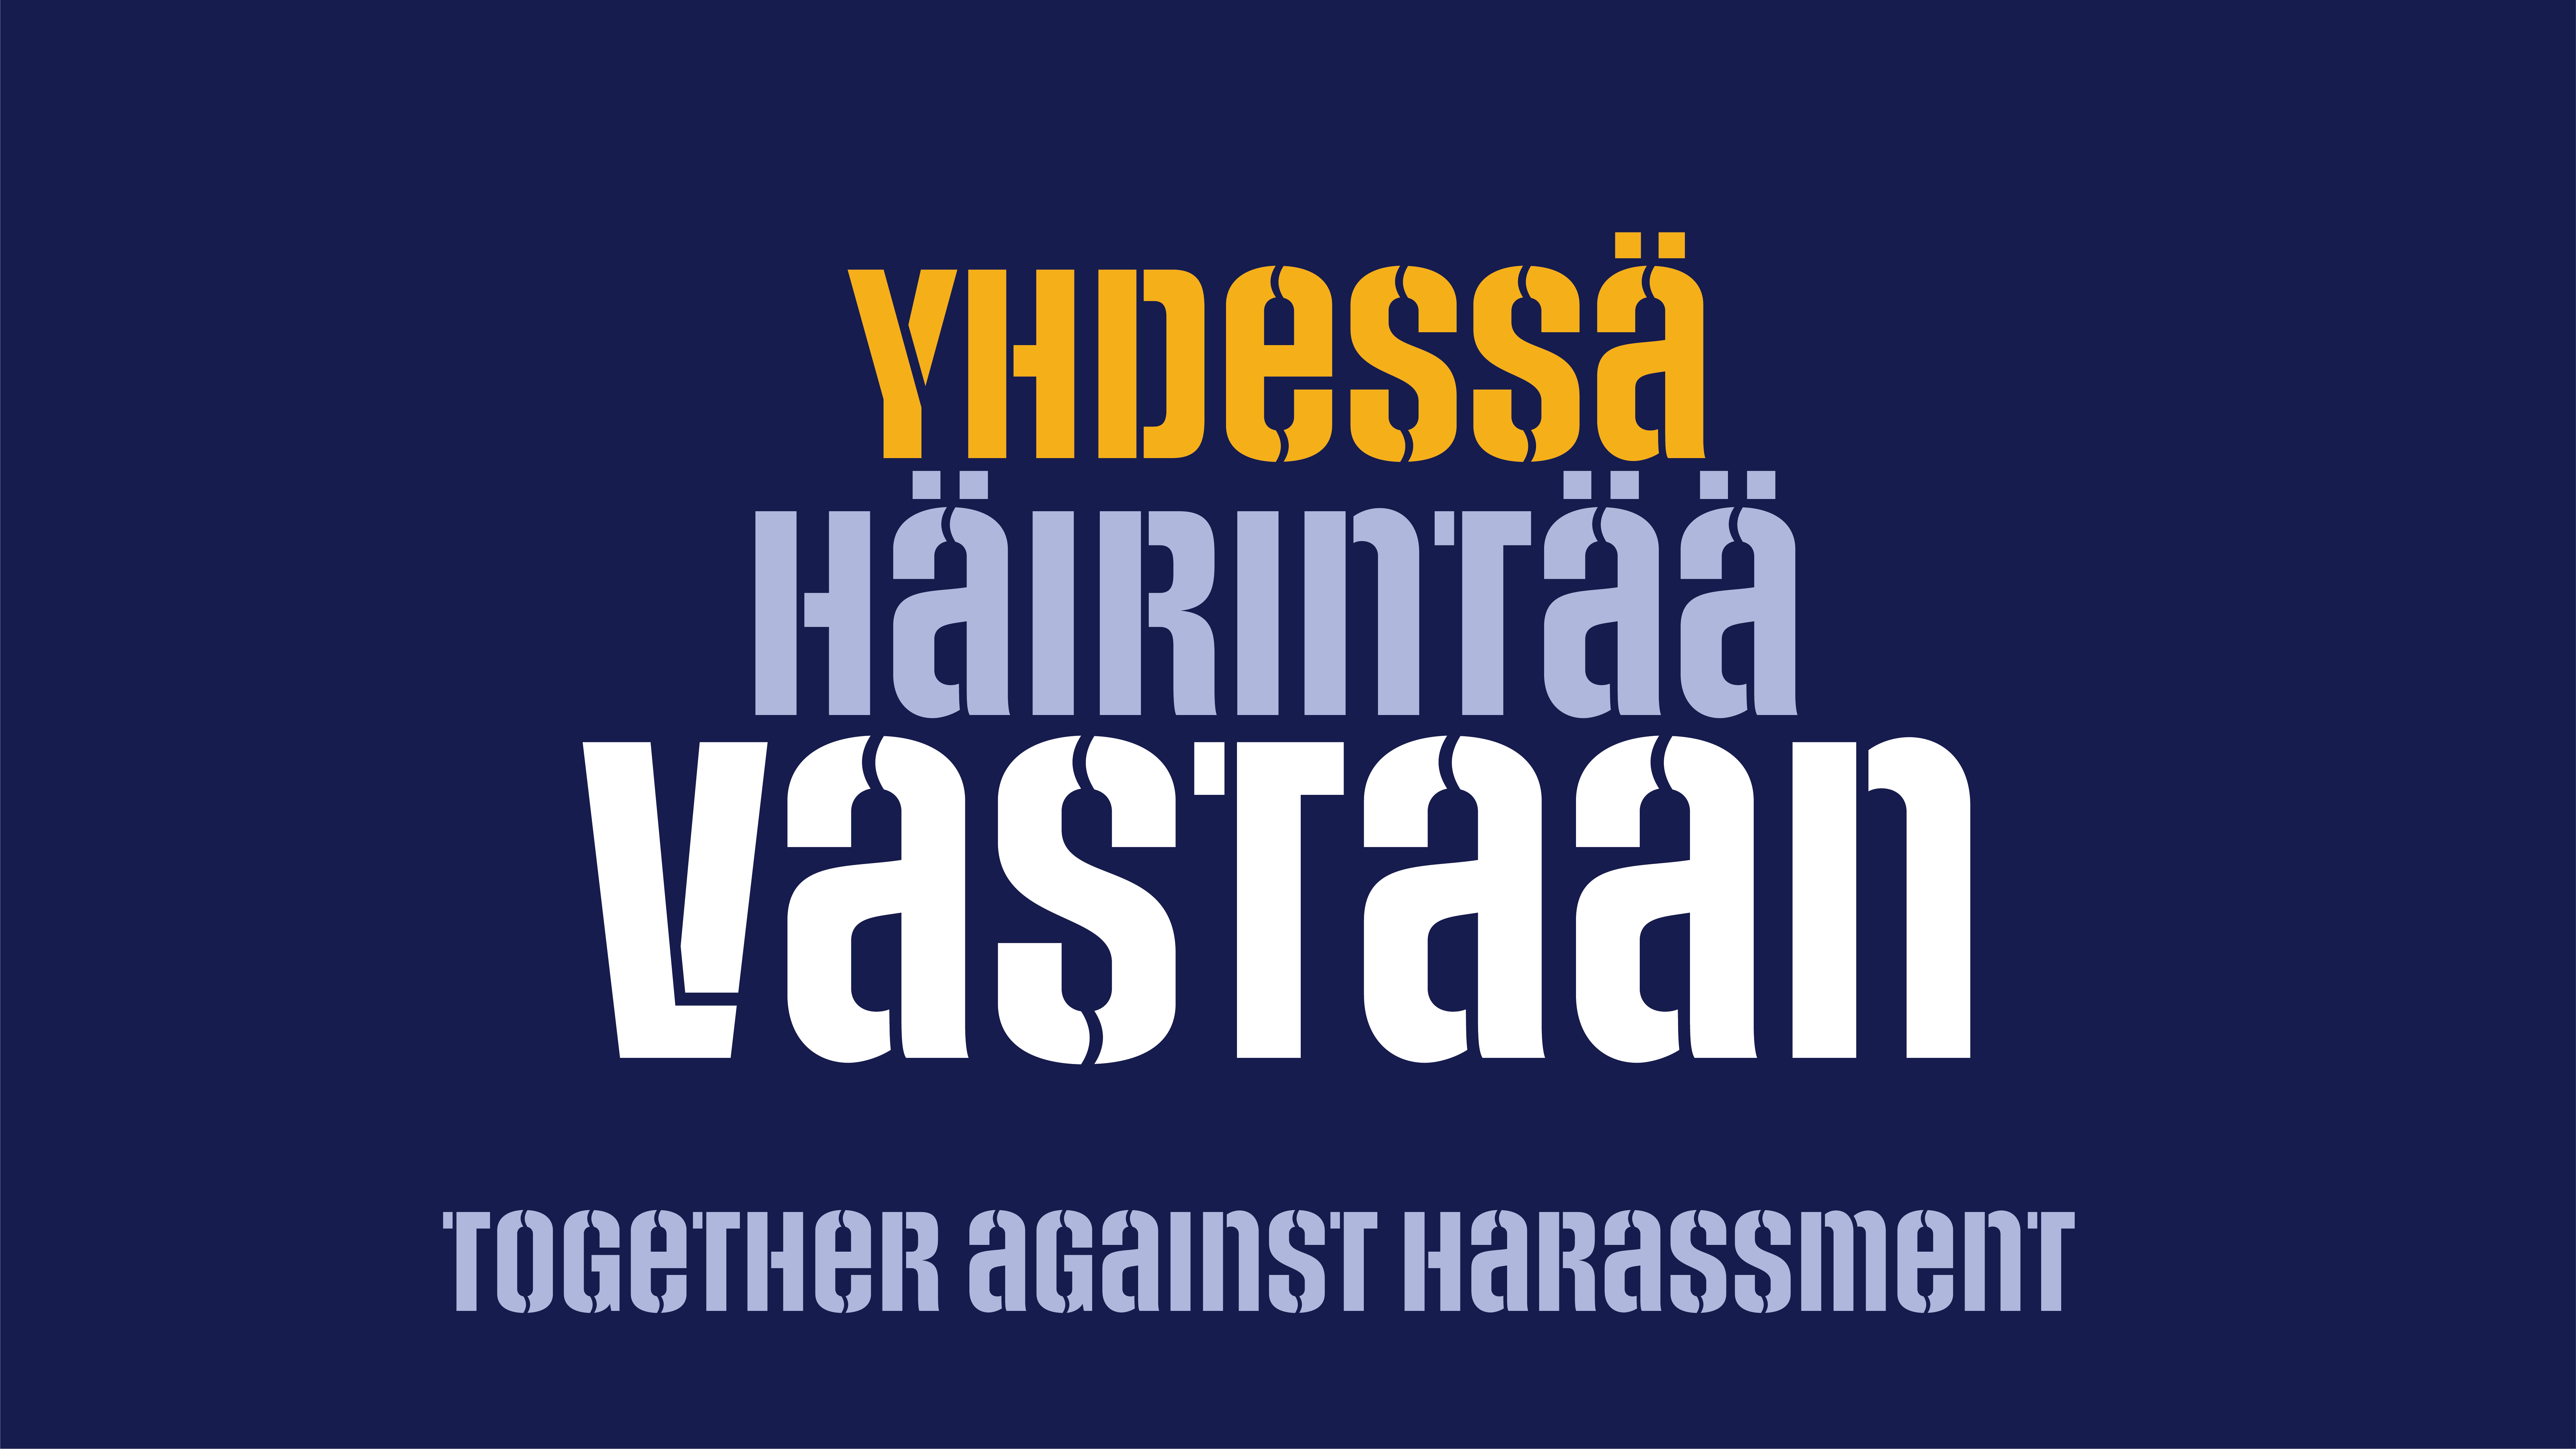 Together against harassment